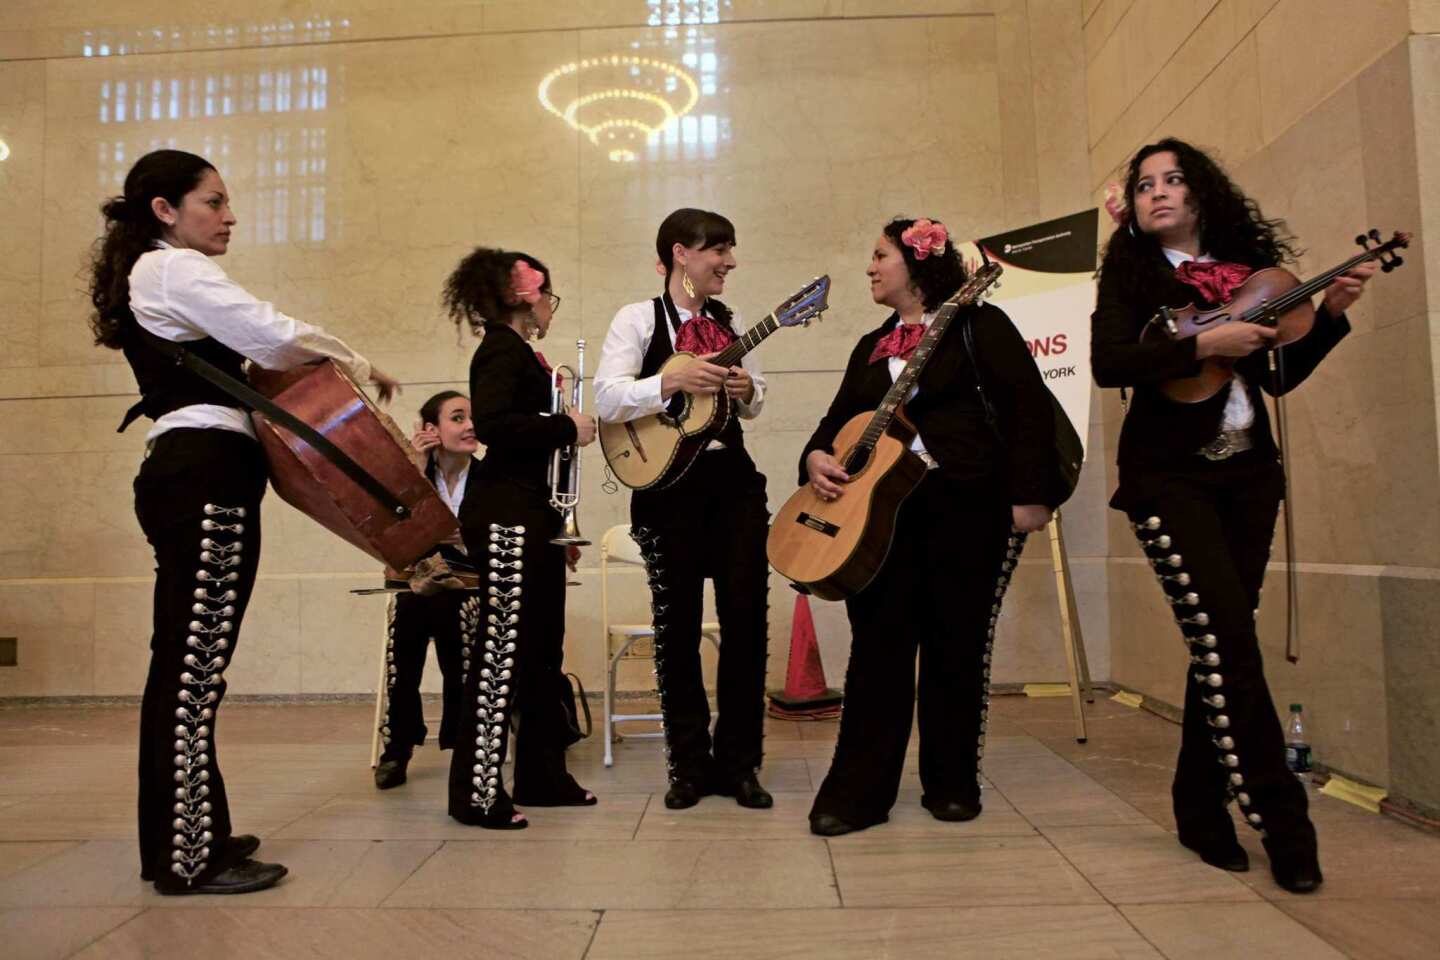 Subway mariachi band